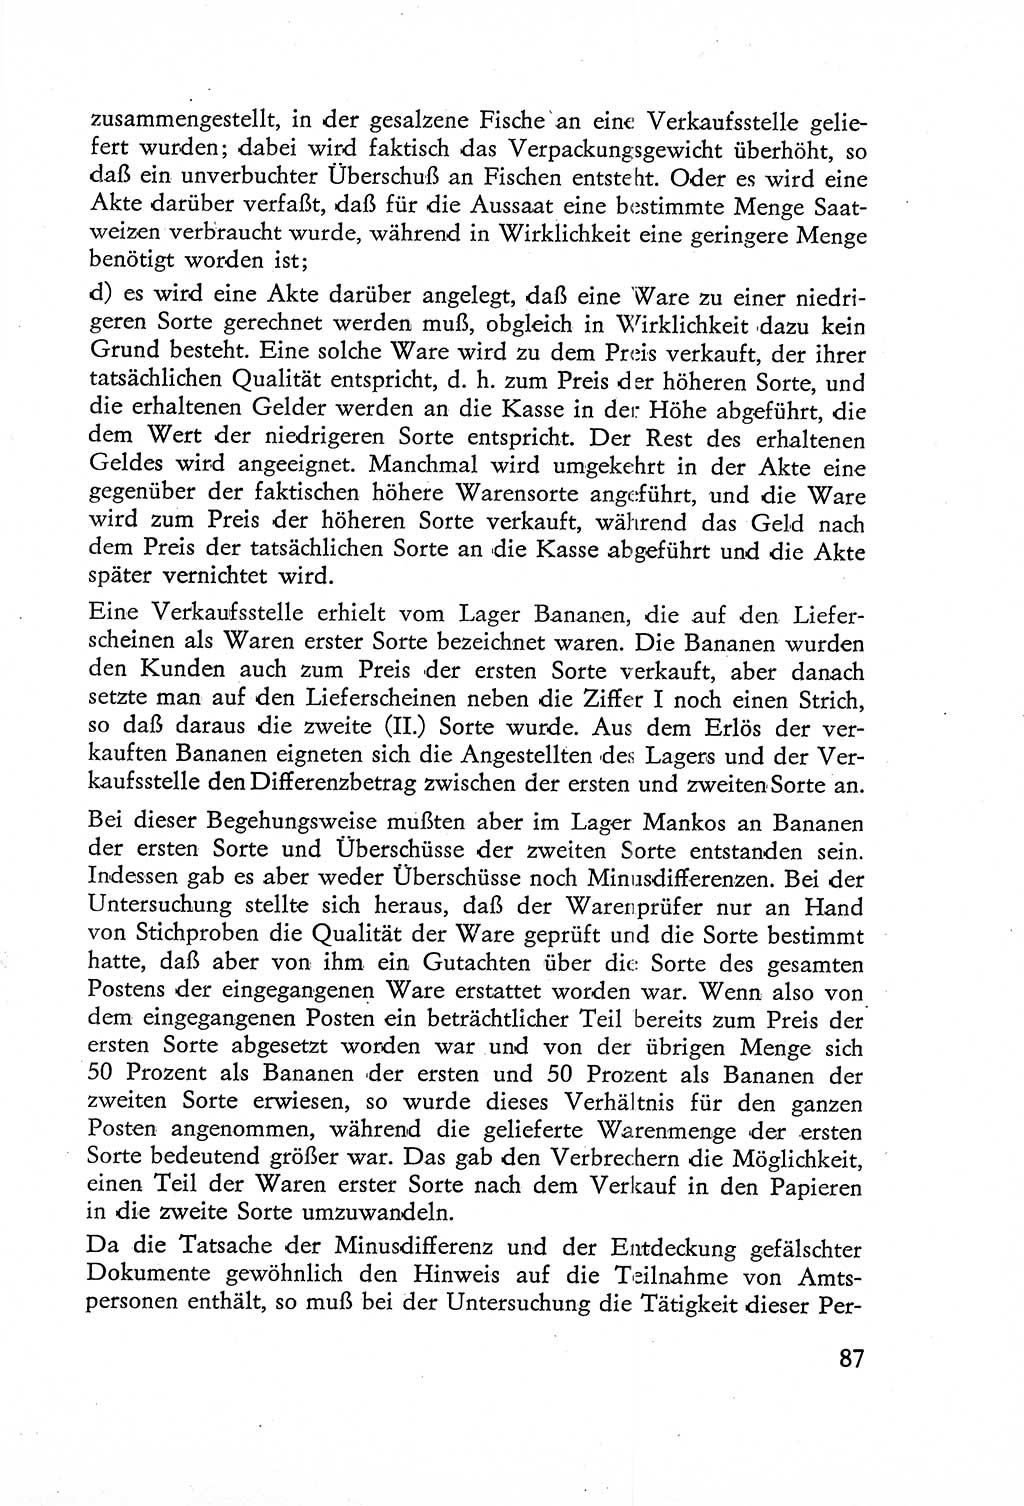 Die Untersuchung einzelner Verbrechensarten [Deutsche Demokratische Republik (DDR)] 1960, Seite 87 (Unters. Verbr.-Art. DDR 1960, S. 87)